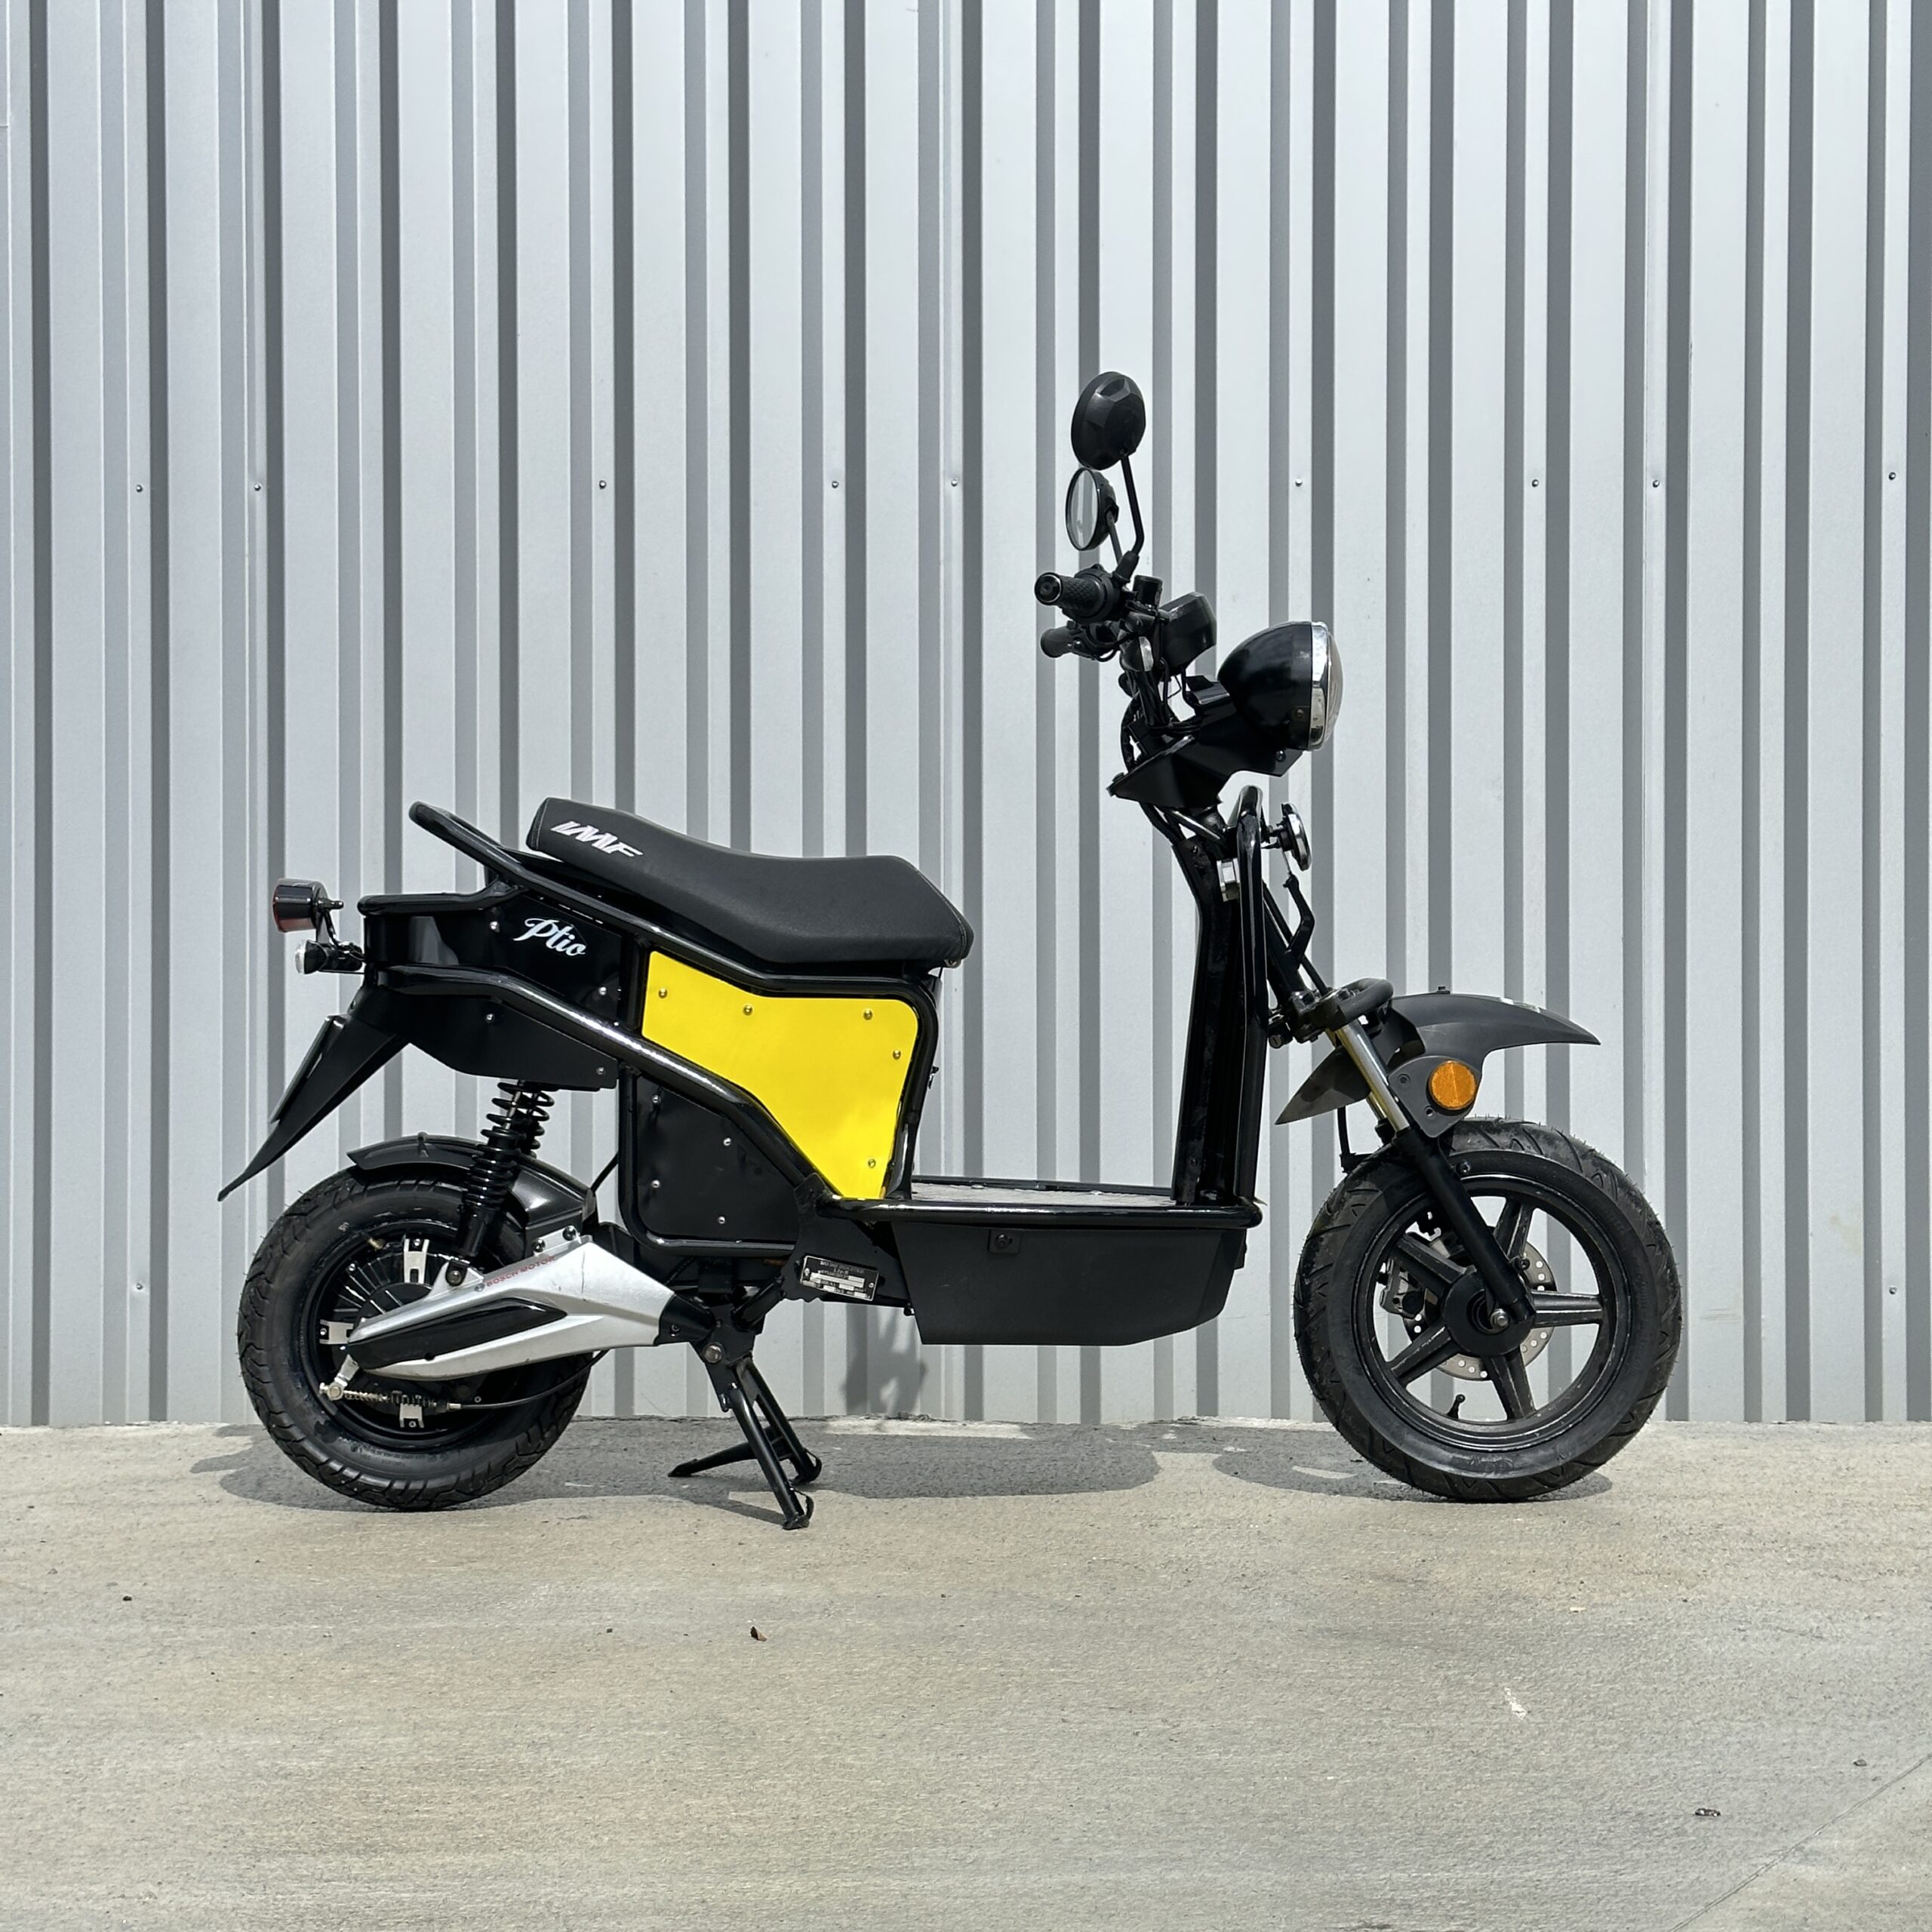 E-Ptio scooter électrique français reconditionné de la marque IMF Industrie, scooter utilisé par les Dominos Pizzas, scooter entièrement personnalisable, coloris jaune de profil